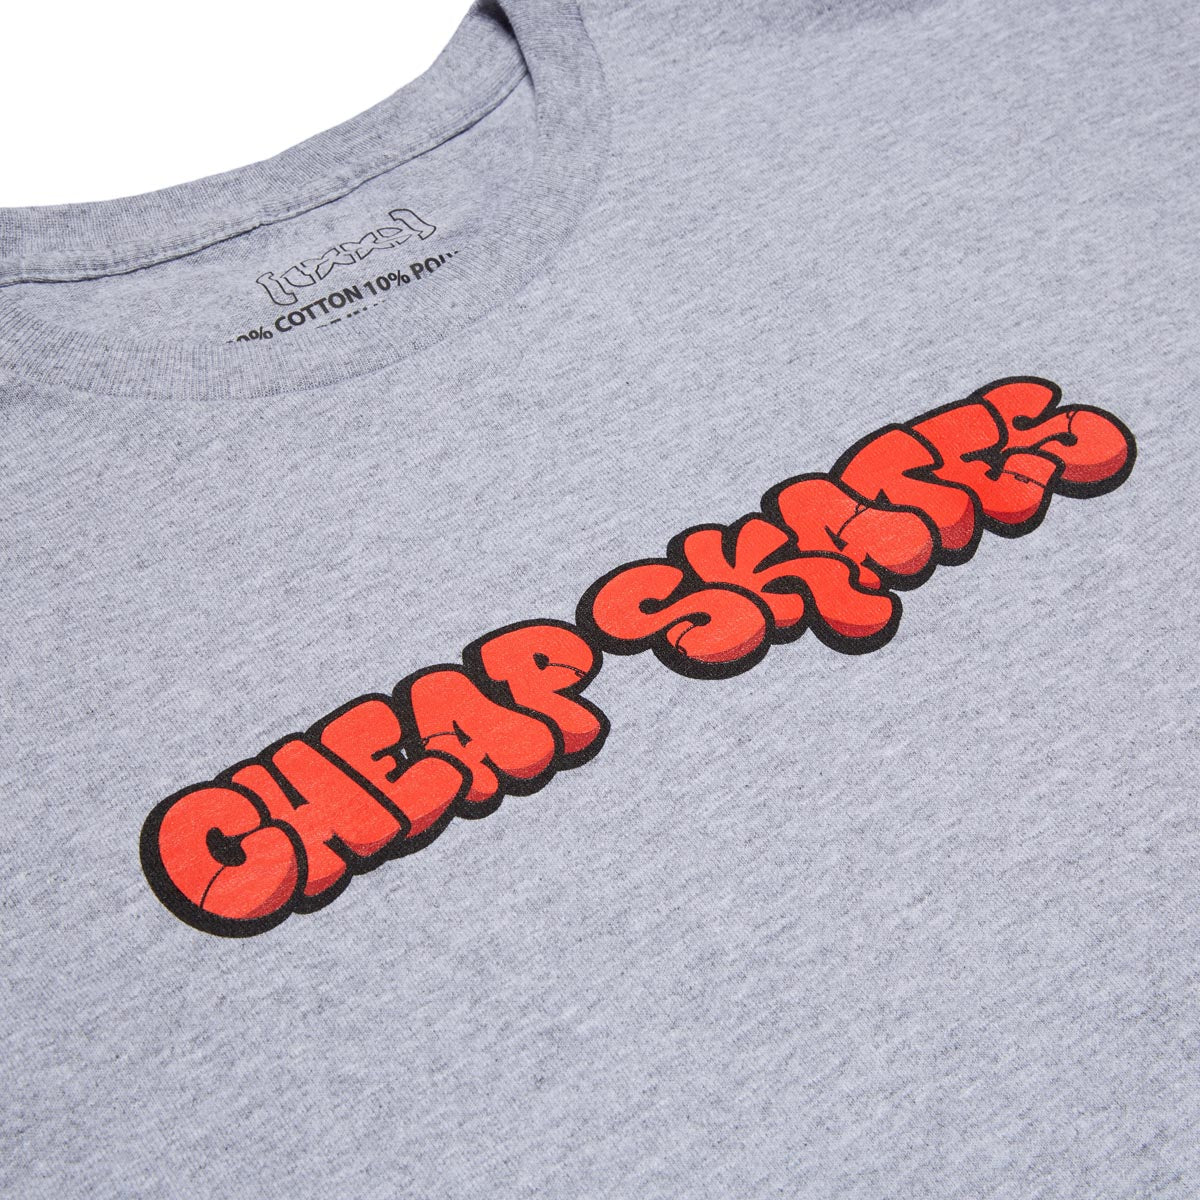 CCS Cheap Skates Tag T-Shirt - Grey/Red/Black image 2